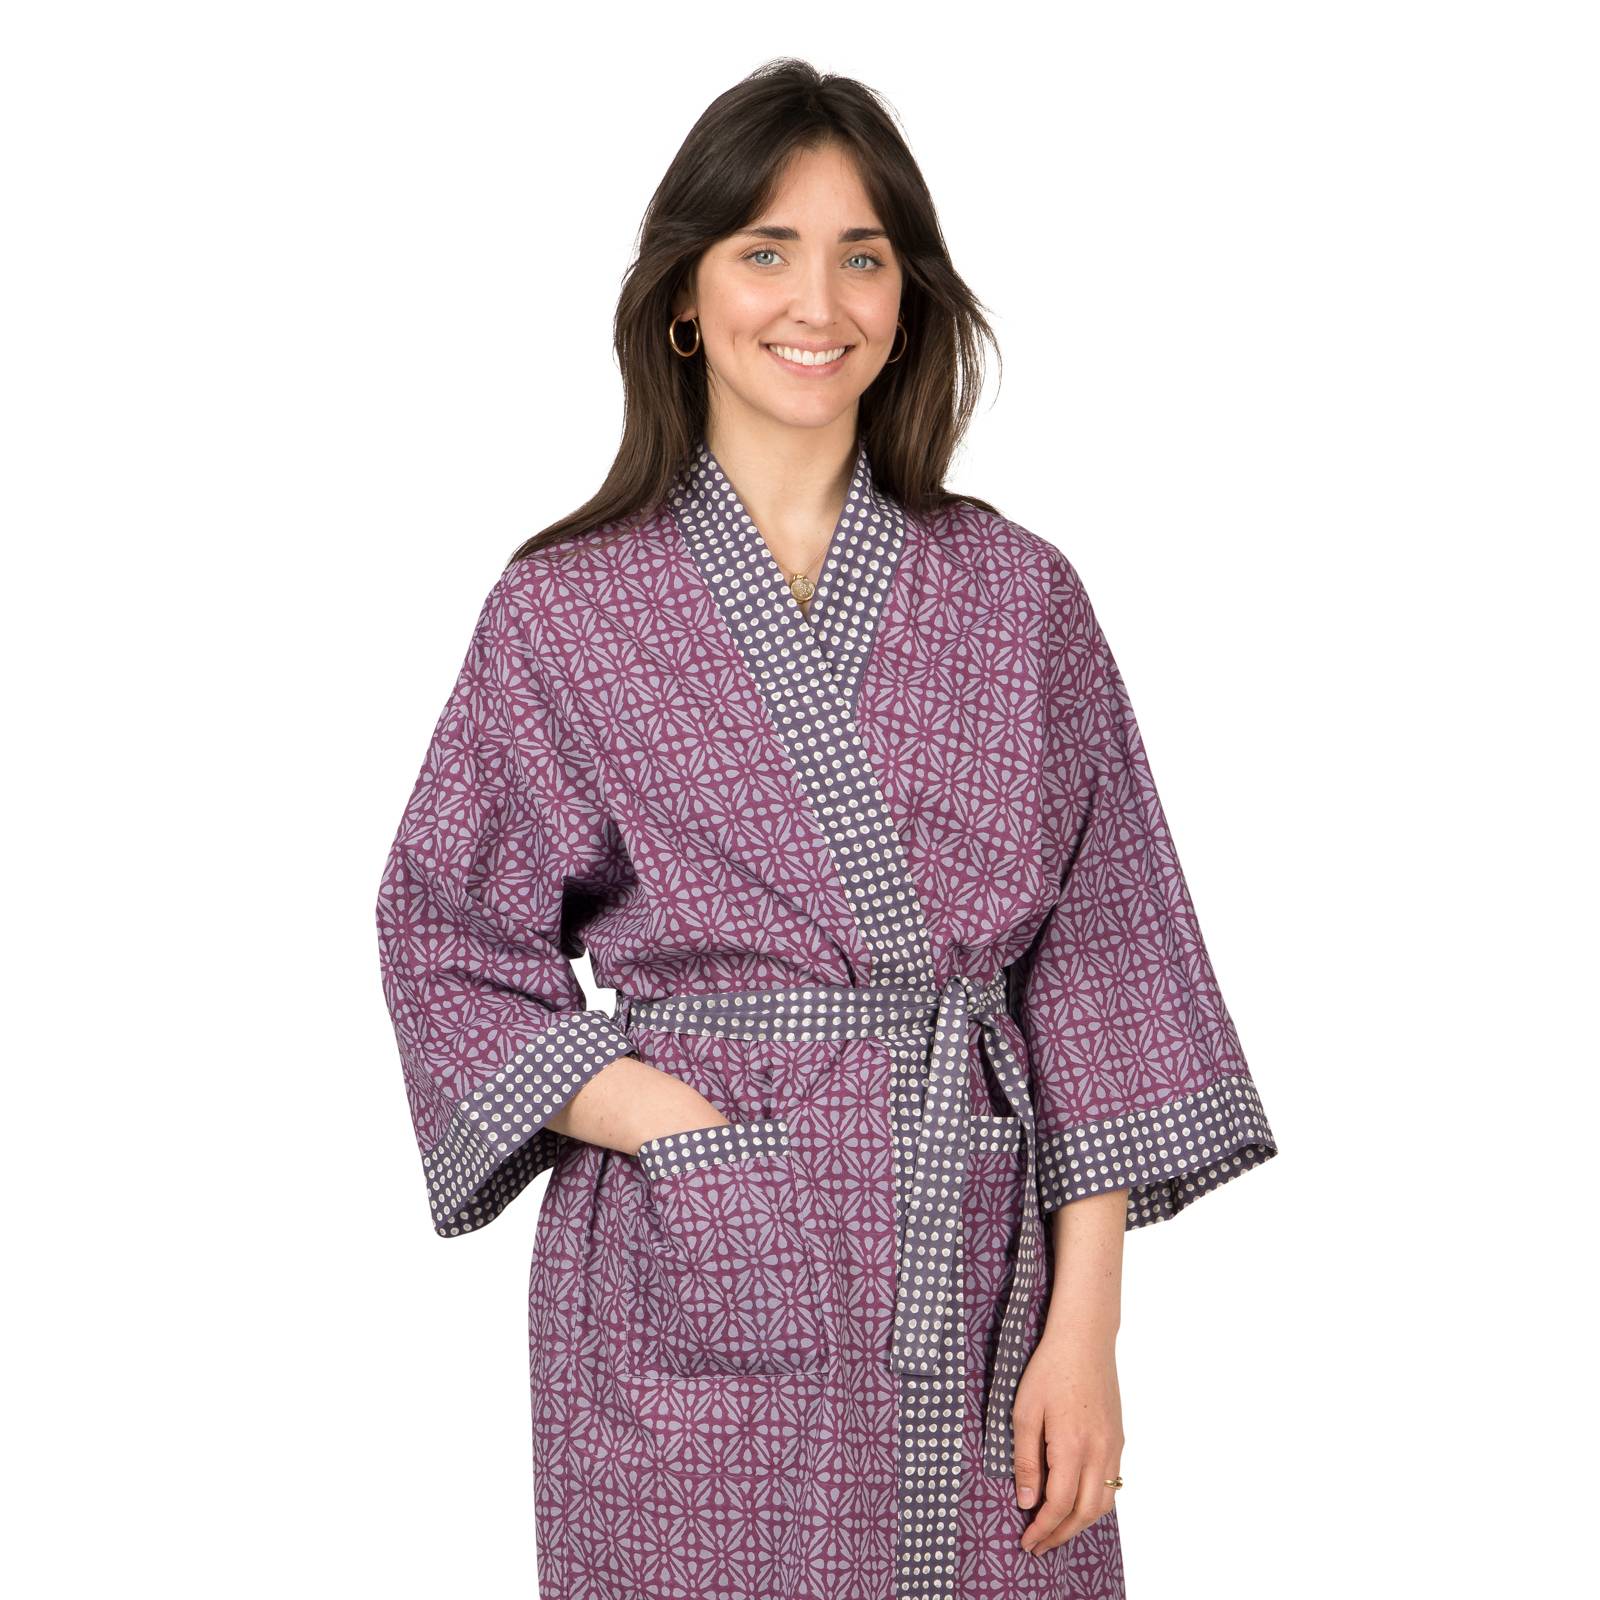 Kimonos Grand Kimono Kale 100% Coton Bio Ethnique VR1616 PURPLE